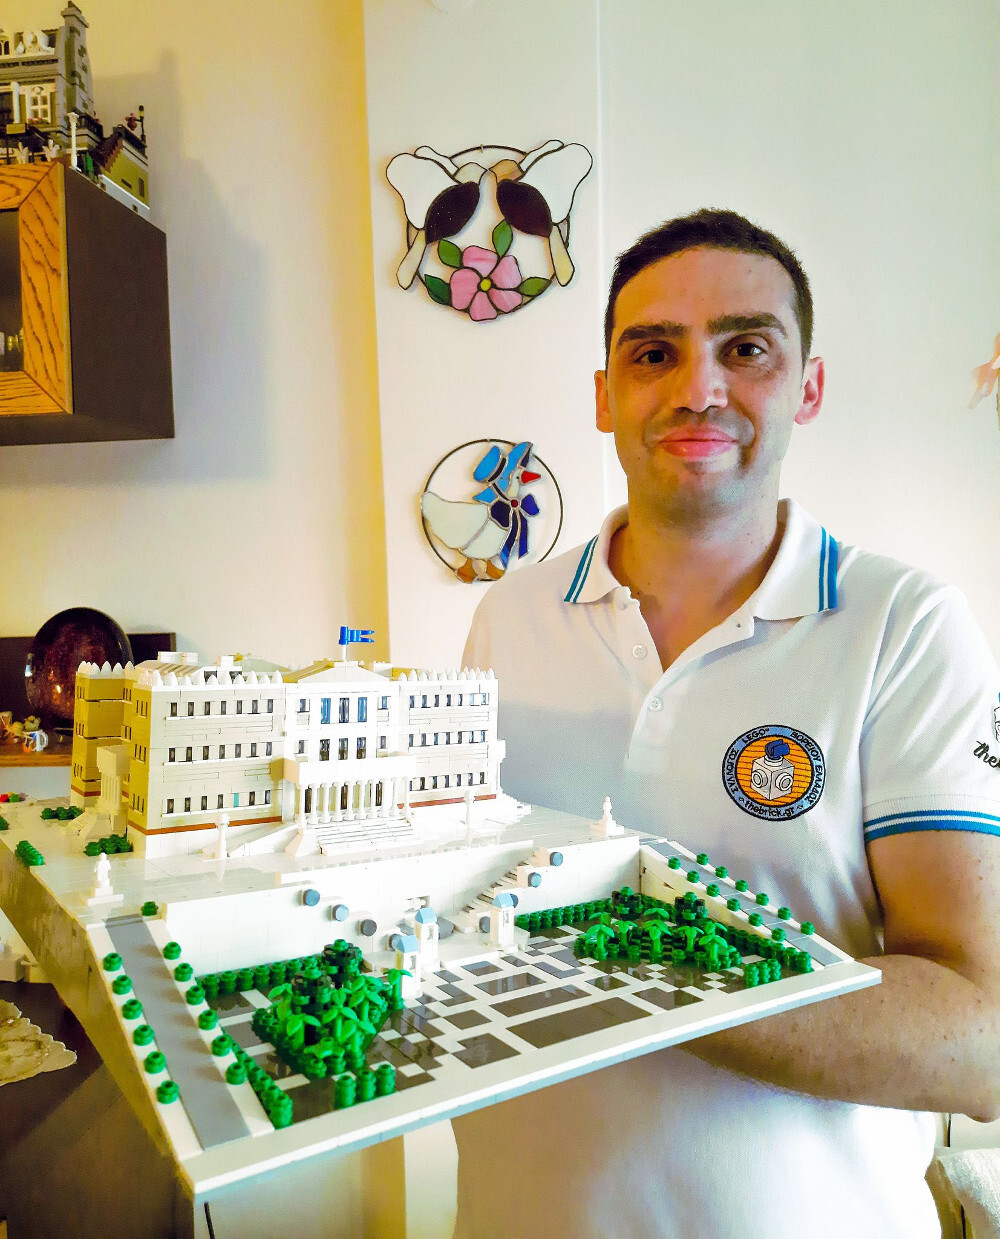 Θεσσαλονίκη: Έφτιαξε με περίπου 5000 lego το κτίριο της Βουλής των Ελλήνων! - ΕΛΛΑΔΑ